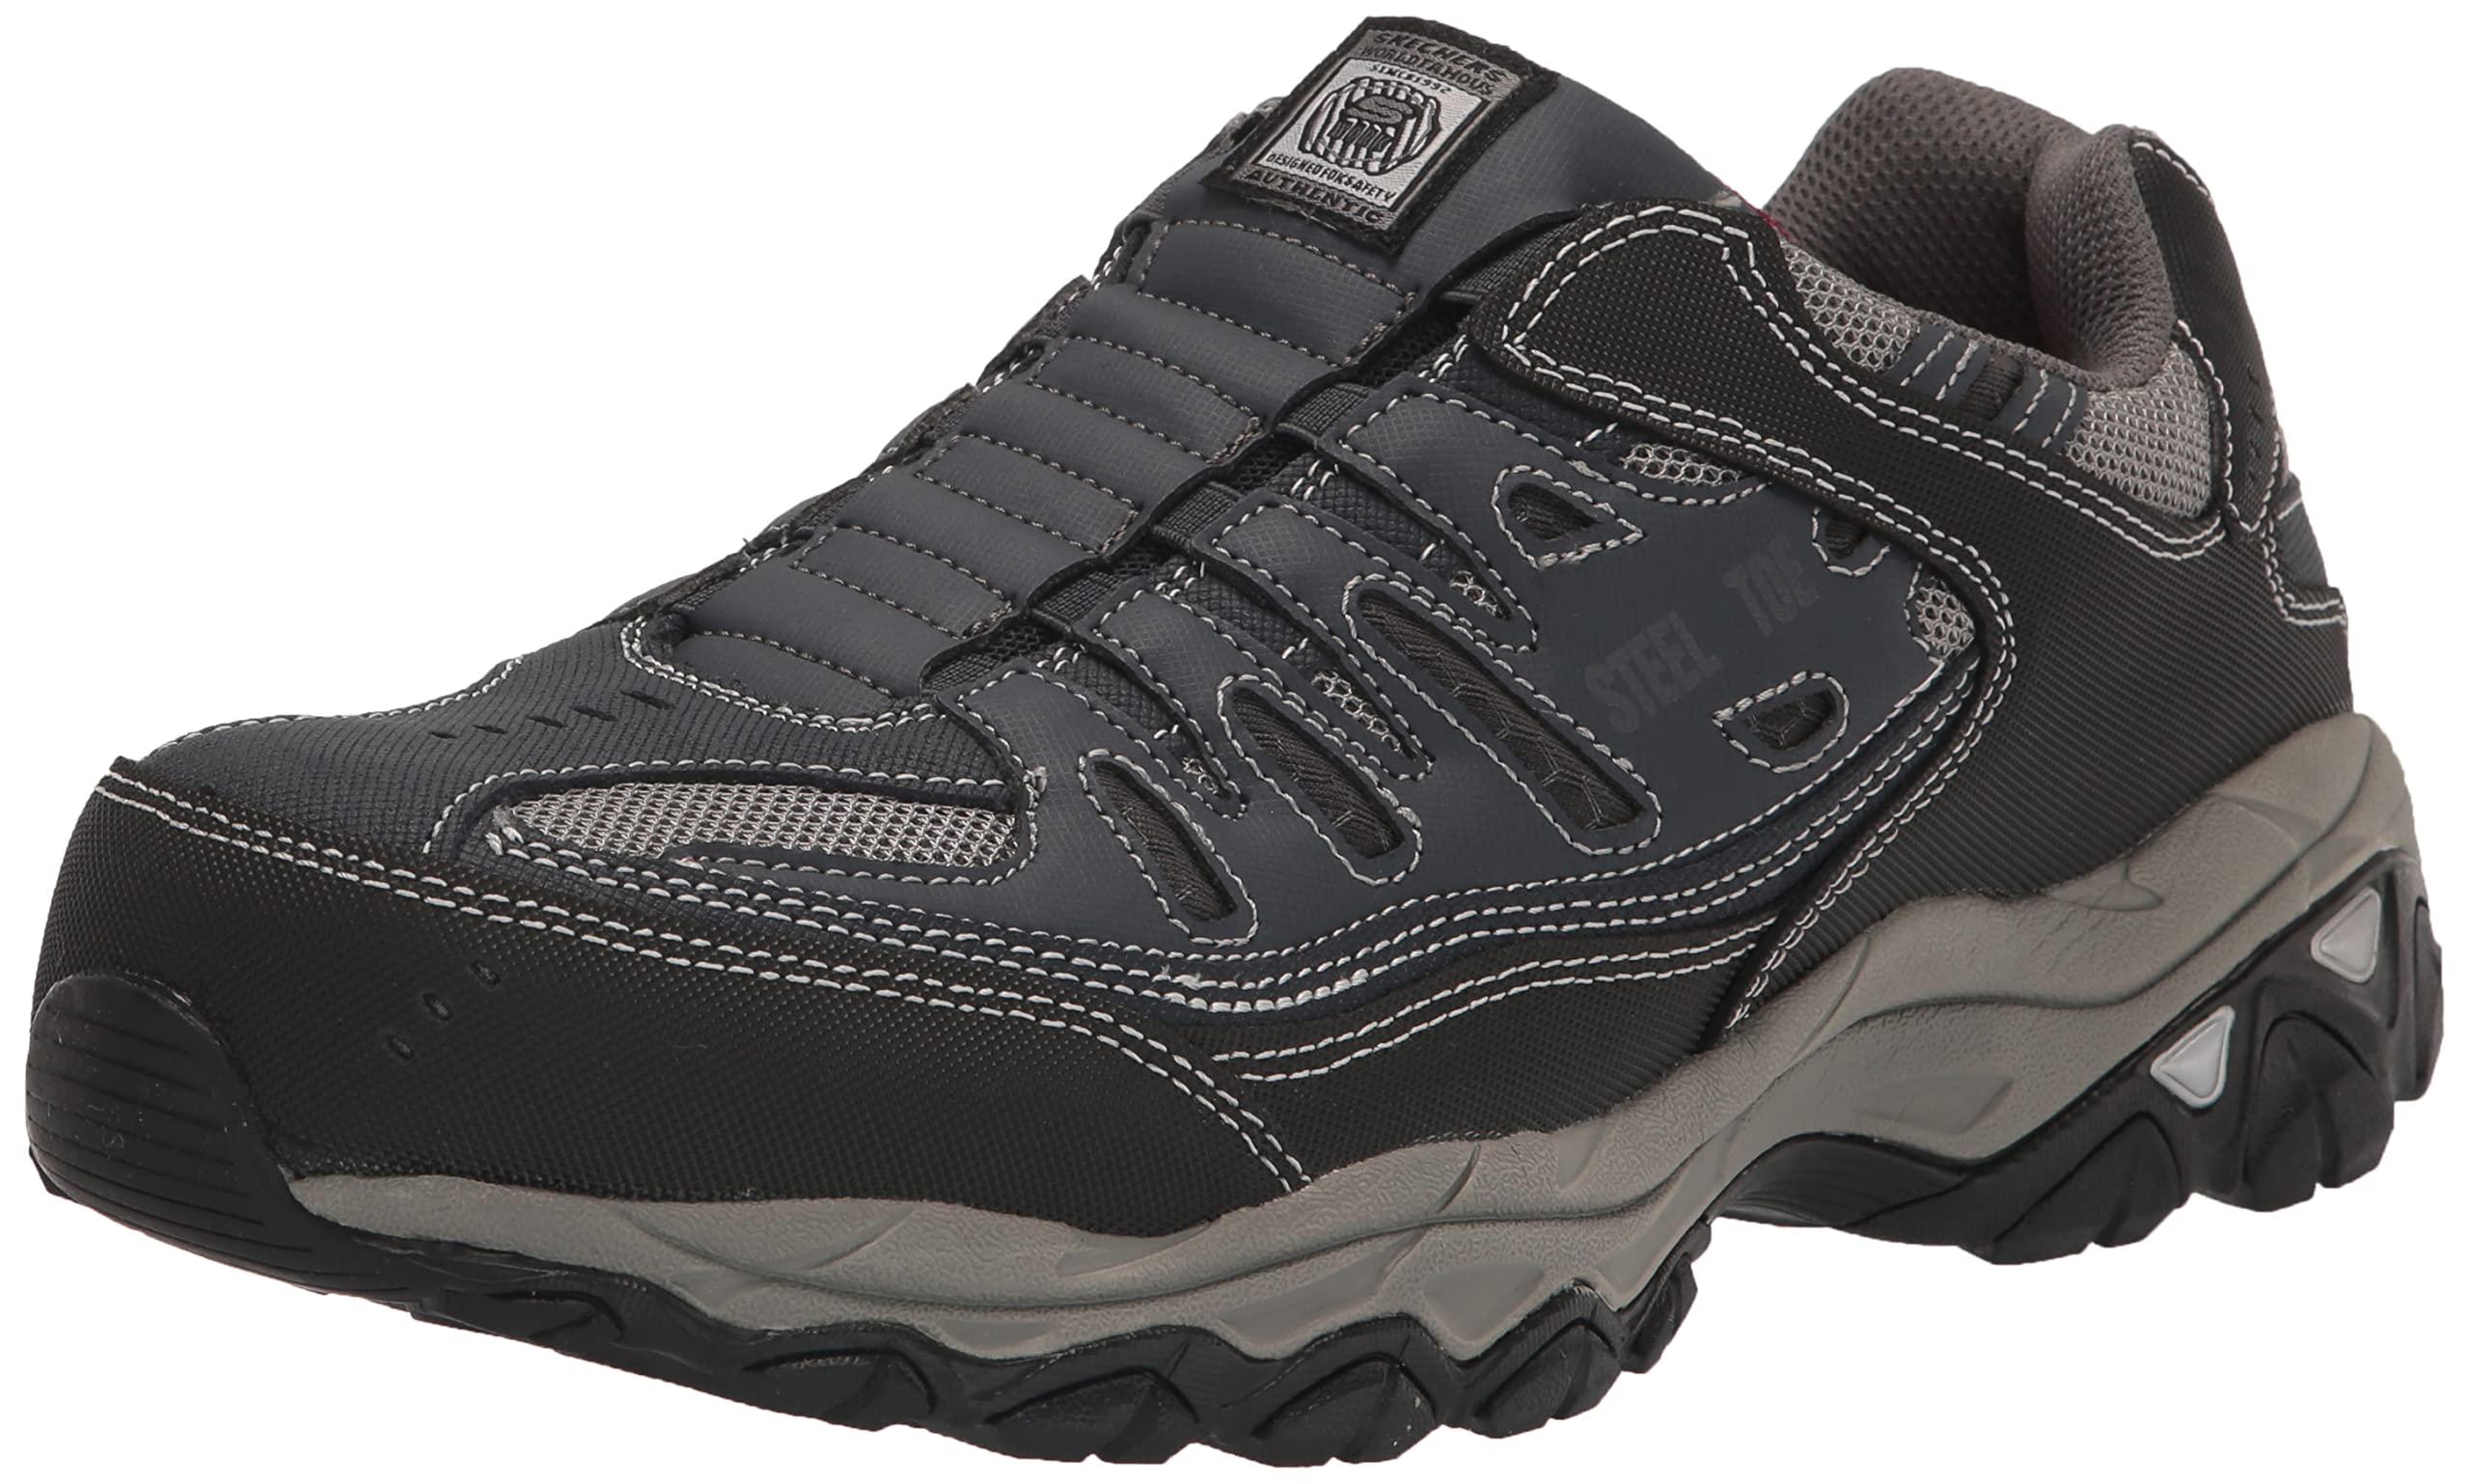 Skechers Cankton Steel Toe Construction Shoe In Black For Men Lyst